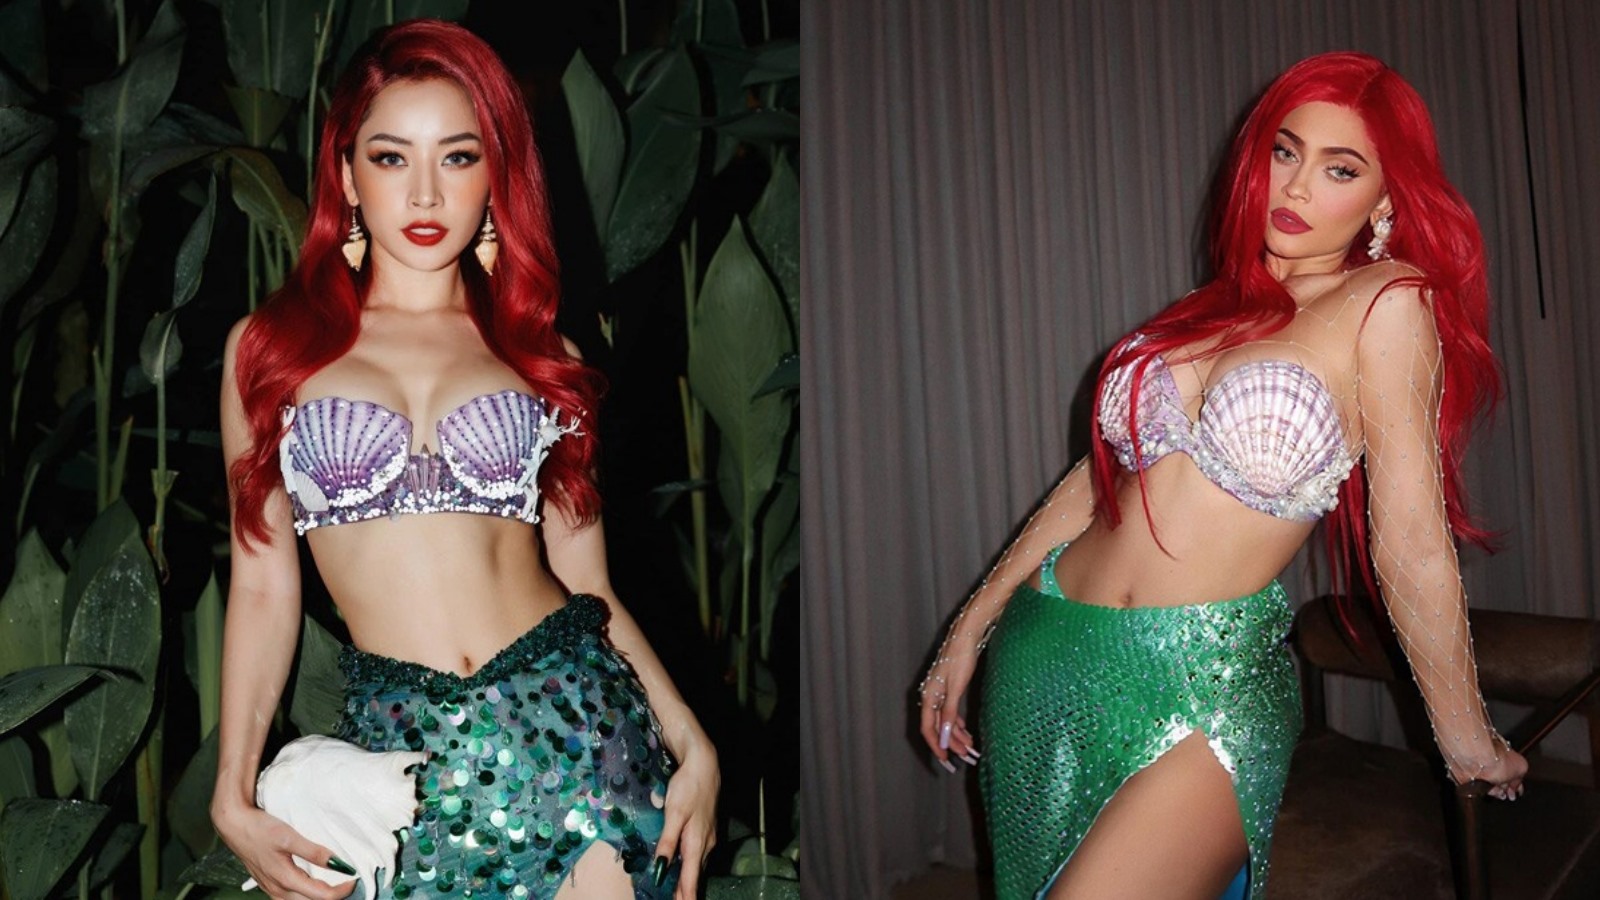 Năm 2020, Chi Pu hóa thân thành nàng tiên cá sexy trong dịp Halloween. Dù vậy, khán giả nhanh chóng phát hiện trang phục, màu tóc, trang điểm của Chi Pu giống với tạo hình của Kylie Jenner từng thực hiện trước đó. Ảnh: IG.